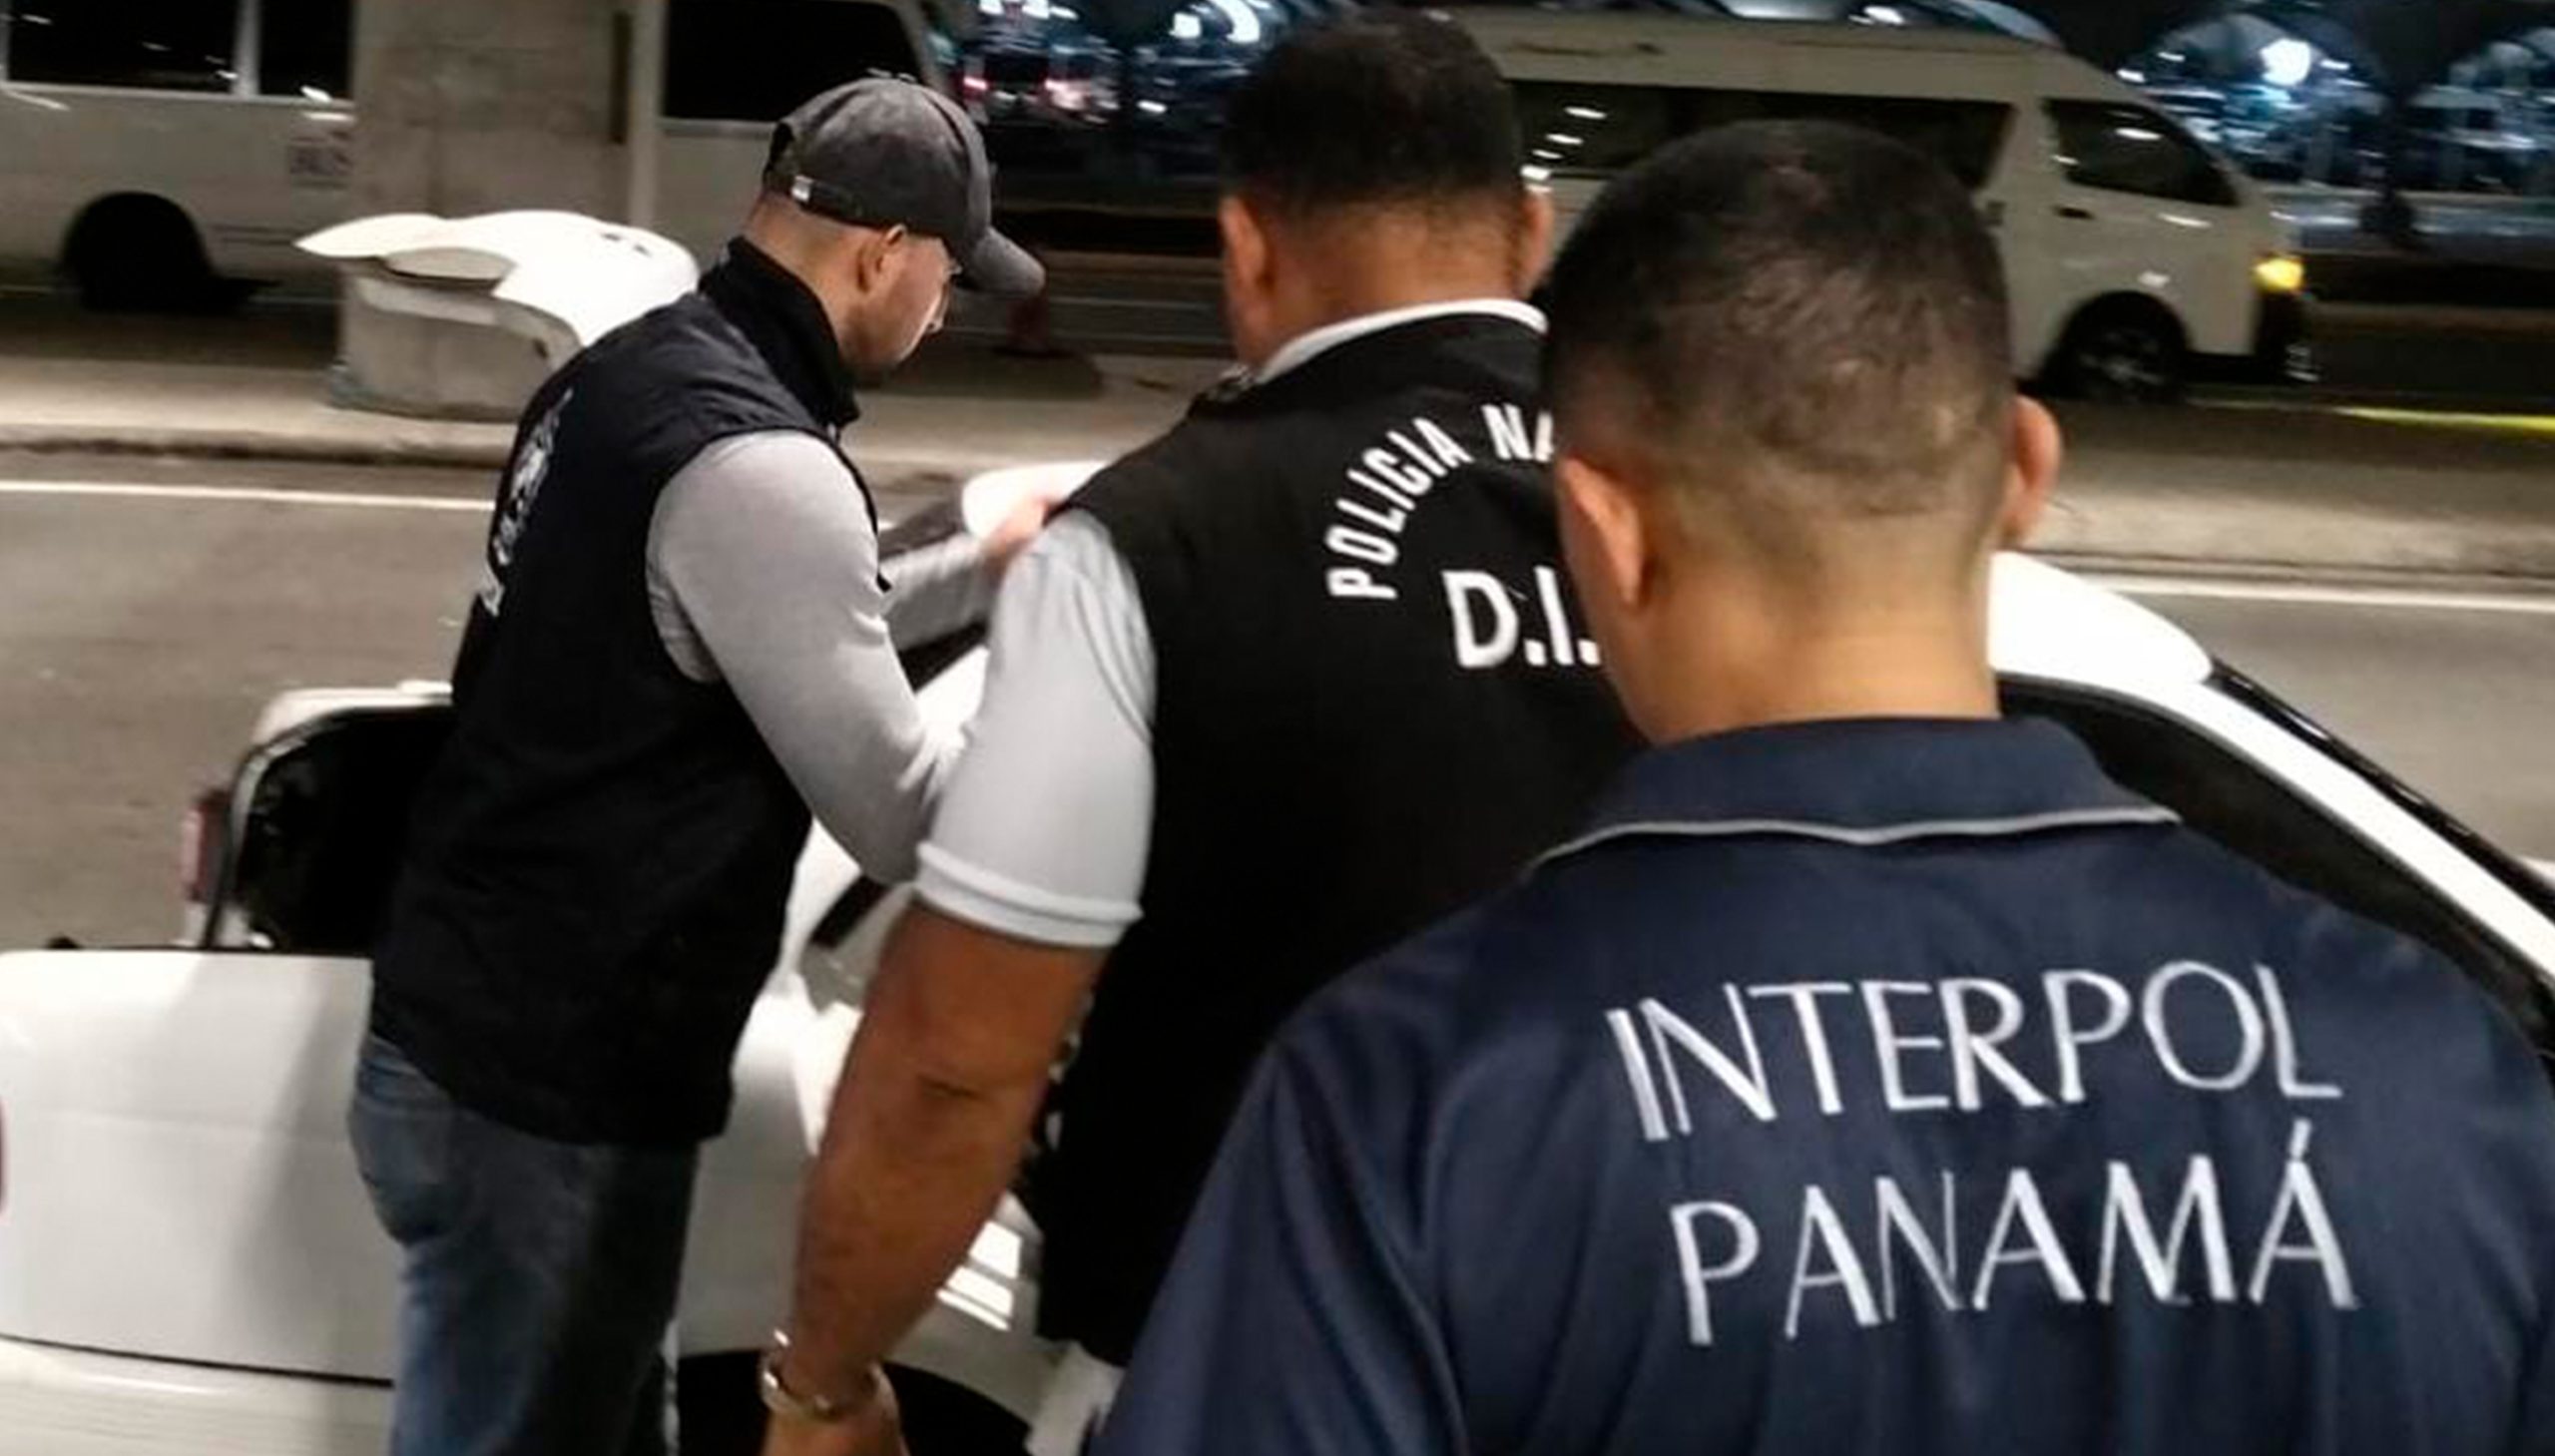 Interpol Panamá aprehende a ciudadano mexicano requerido por narcotráfico y lavado de dinero